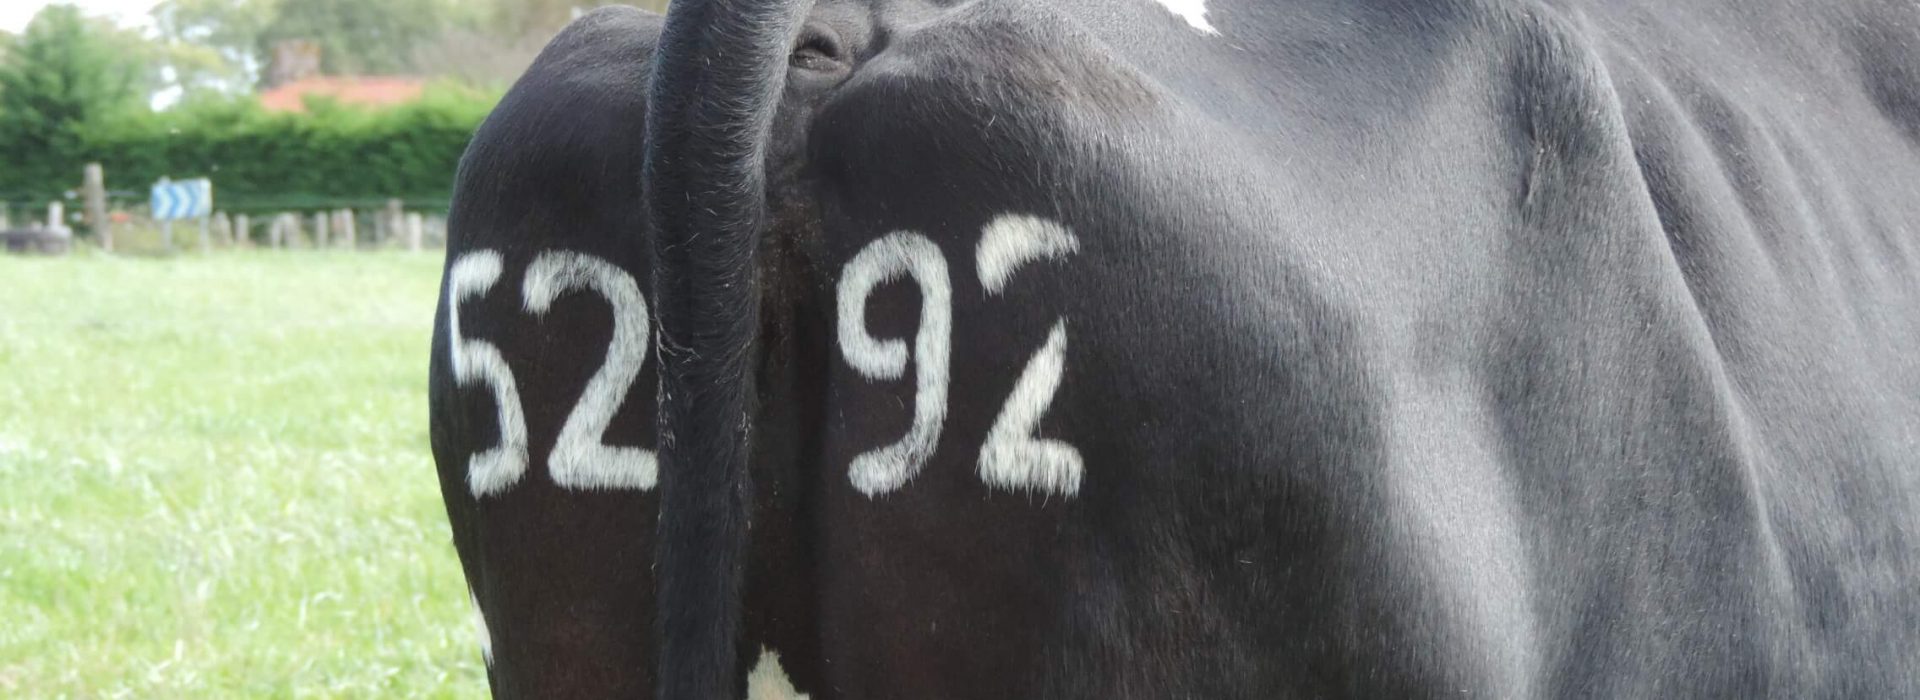 Numéros tatoués sur le cuir de l'animal